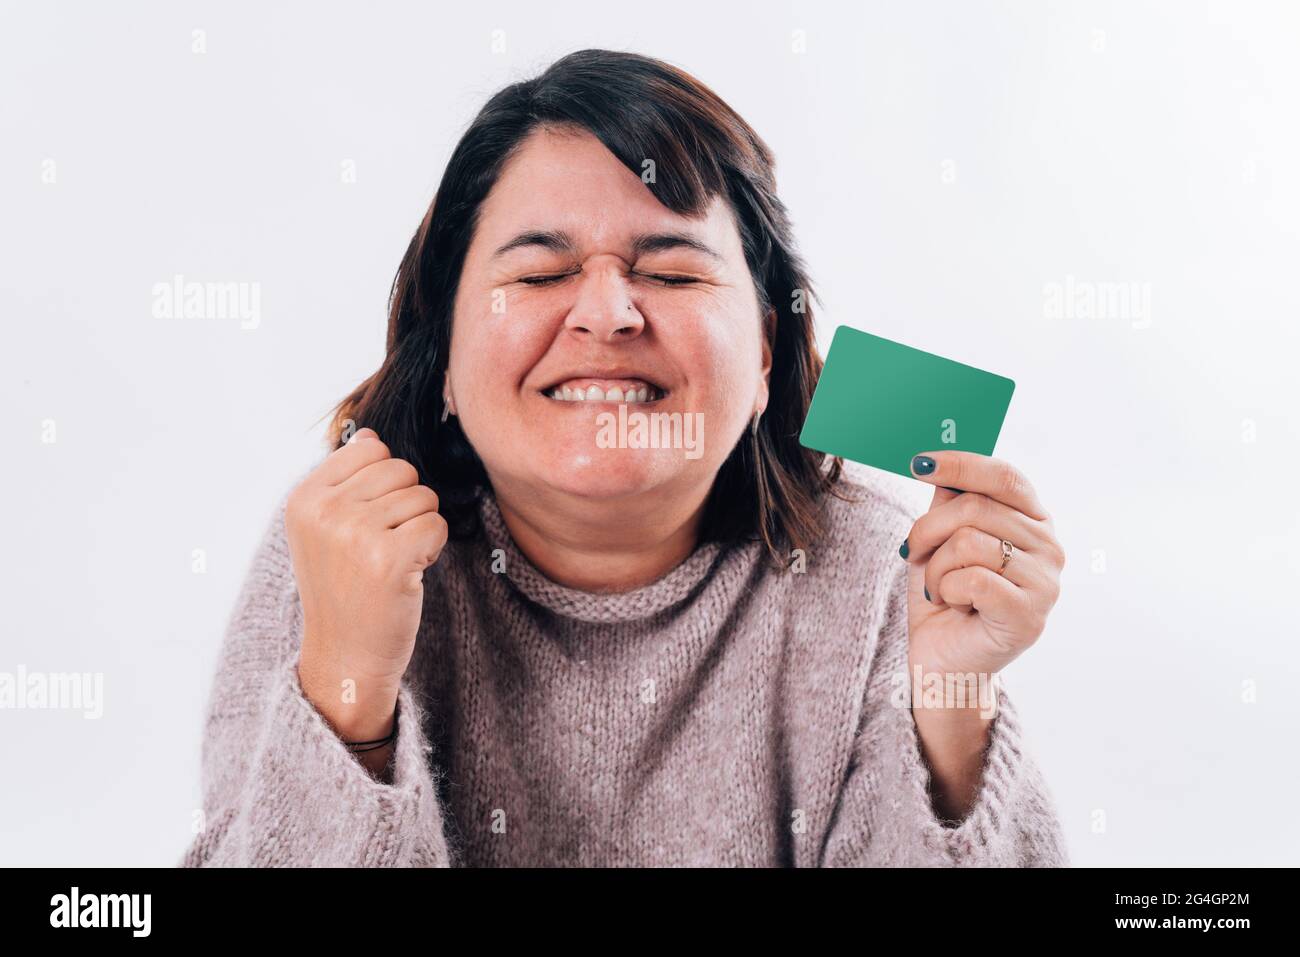 Femme exagérément heureuse qui se serre les yeux avec une carte d'achat en ligne dans sa main. Concept commercial Banque D'Images